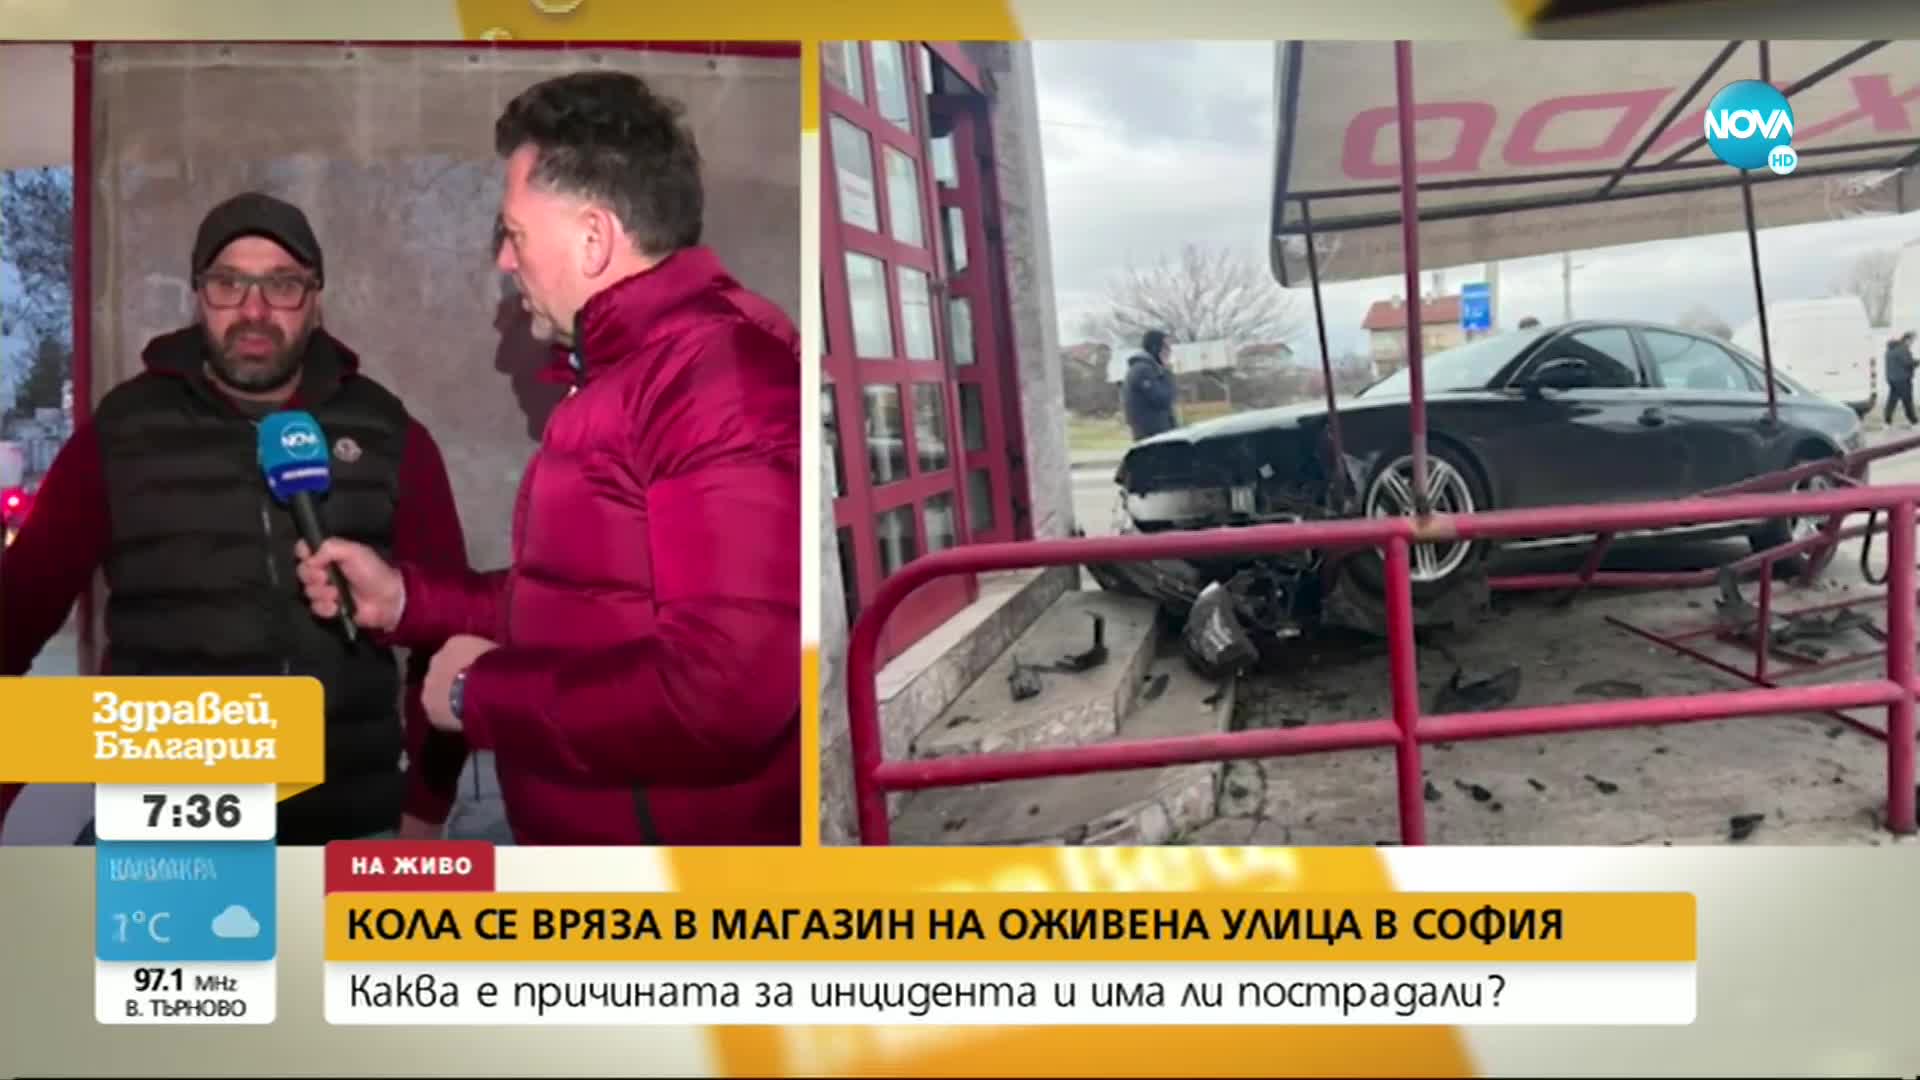 Кола се вряза в магазин за авточасти в София